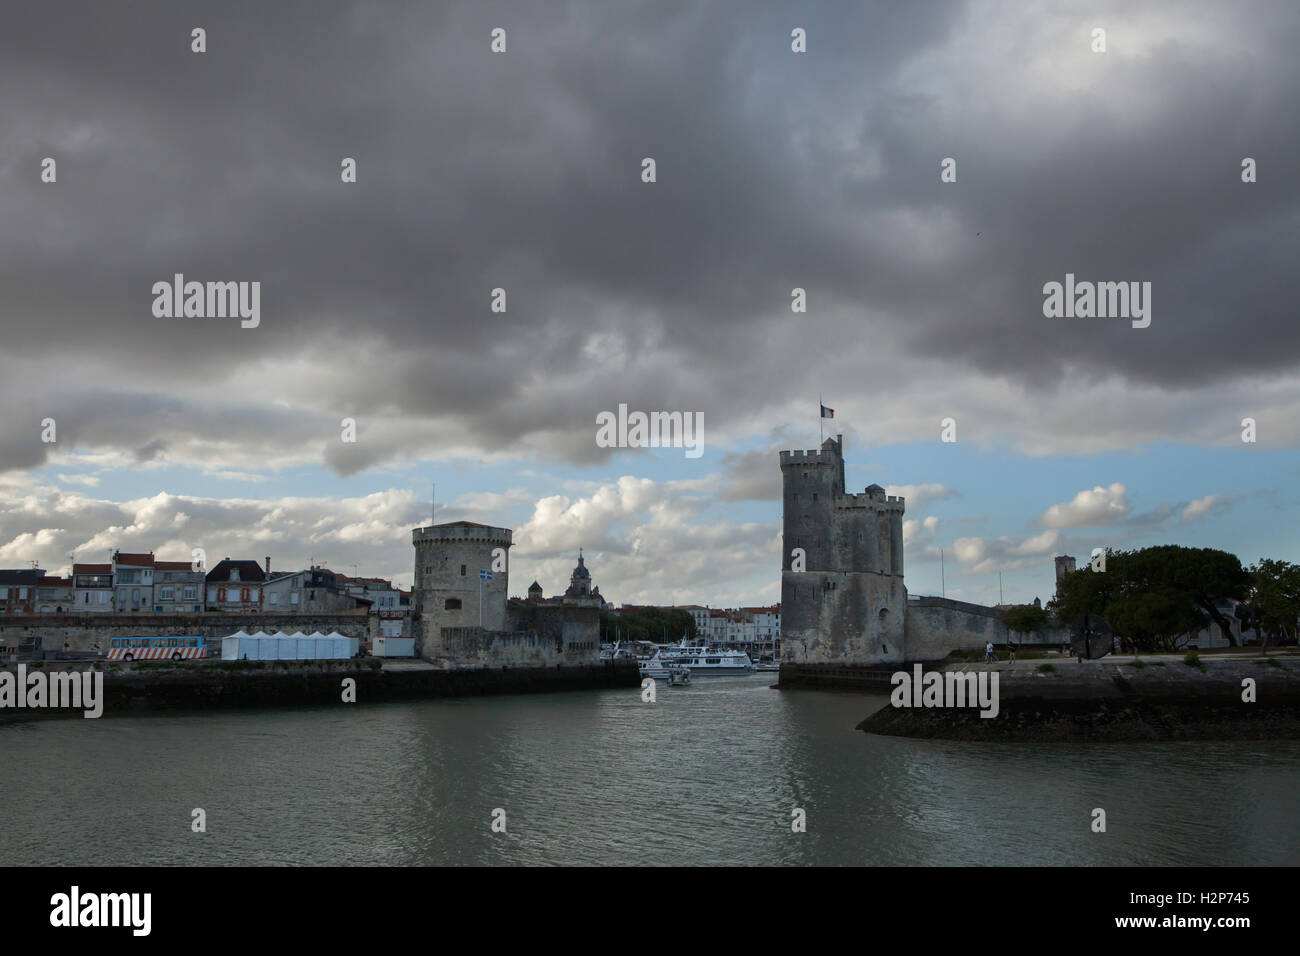 Tour Saint-Nicolas (R) and Tour de la Chaine (L) in the Old Harbour (Vieux Port) in La Rochelle, France. Stock Photo